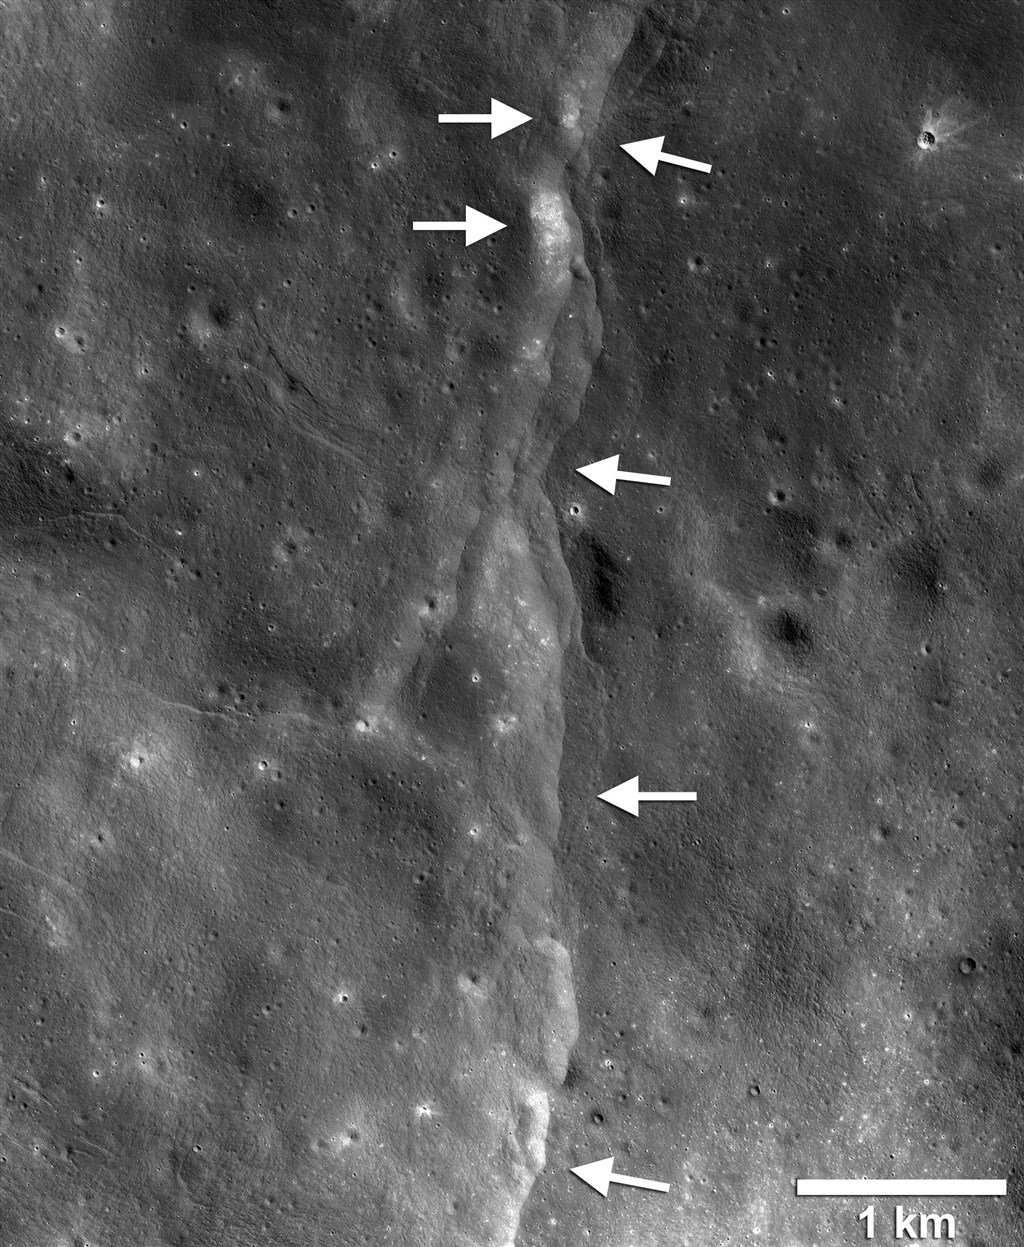 月球构造活动过程逐渐导致表面出现皱褶，由于月球外壳脆弱易碎，这些力量会导致表面在内部收缩时破裂，形成所谓的逆断层。